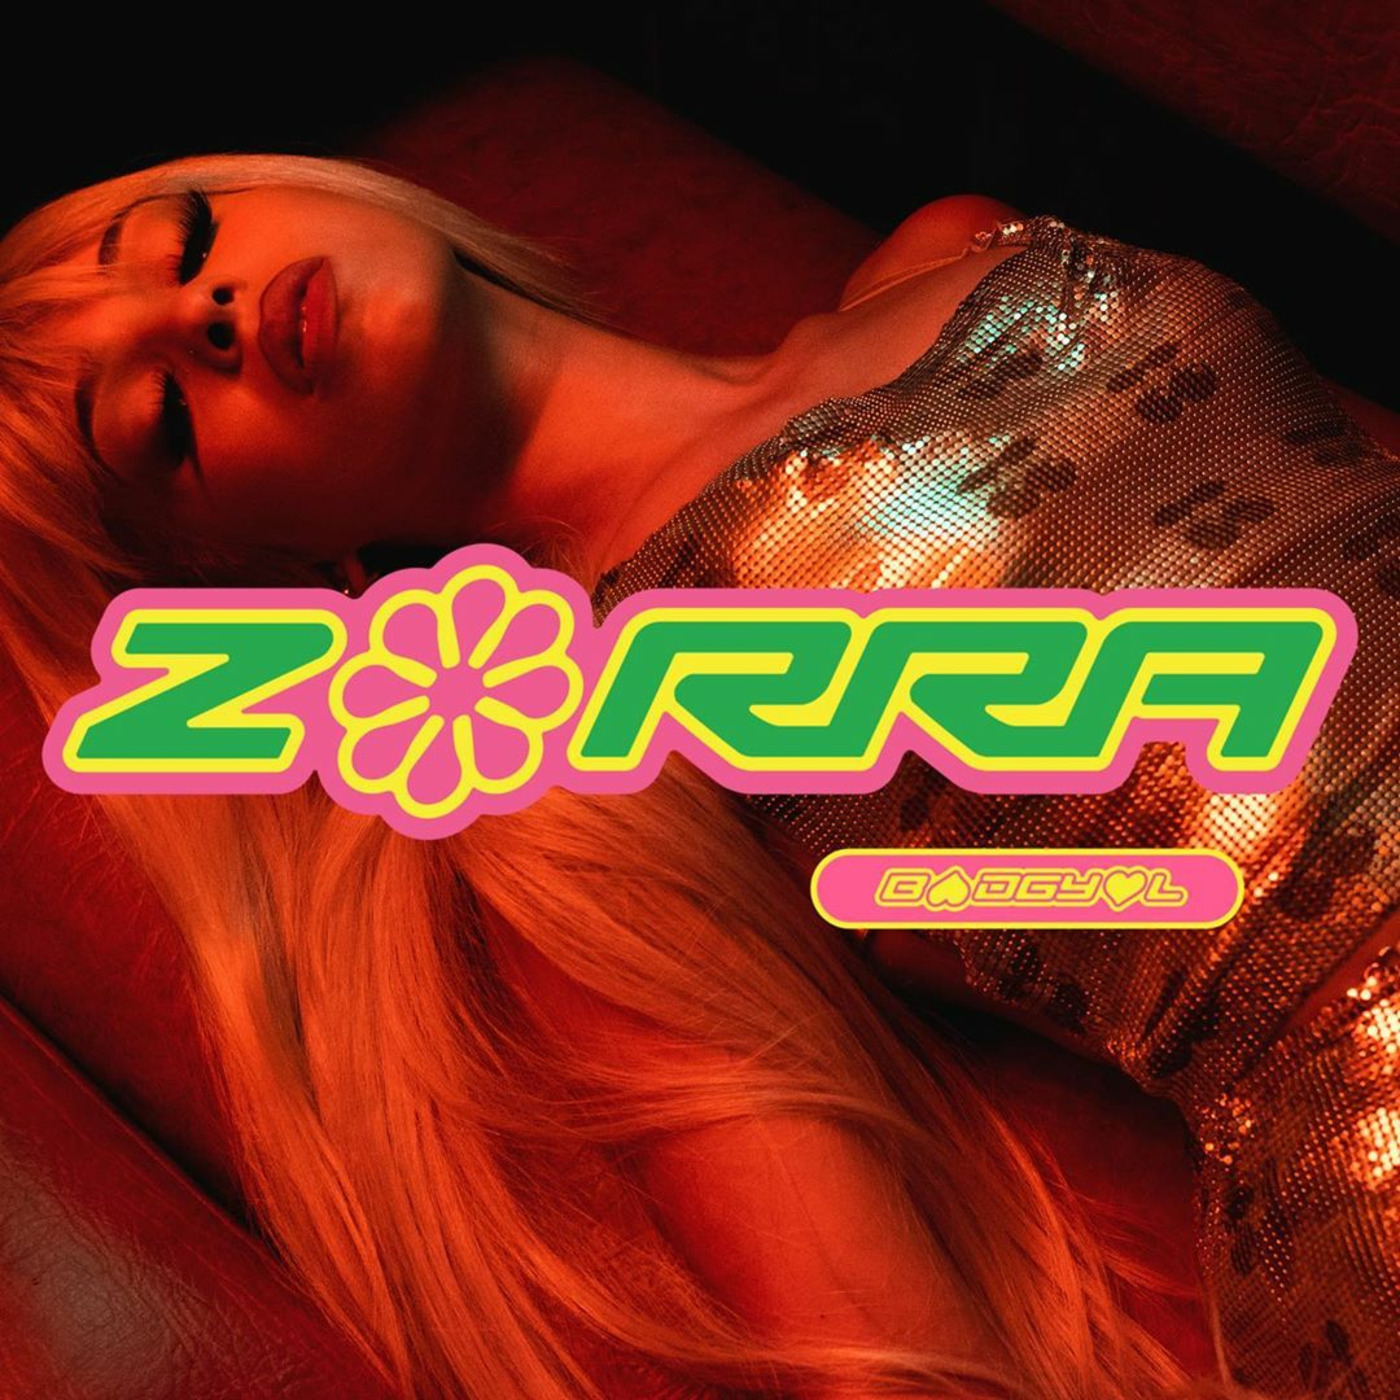 Bad Gyal - Zorra (Remix)